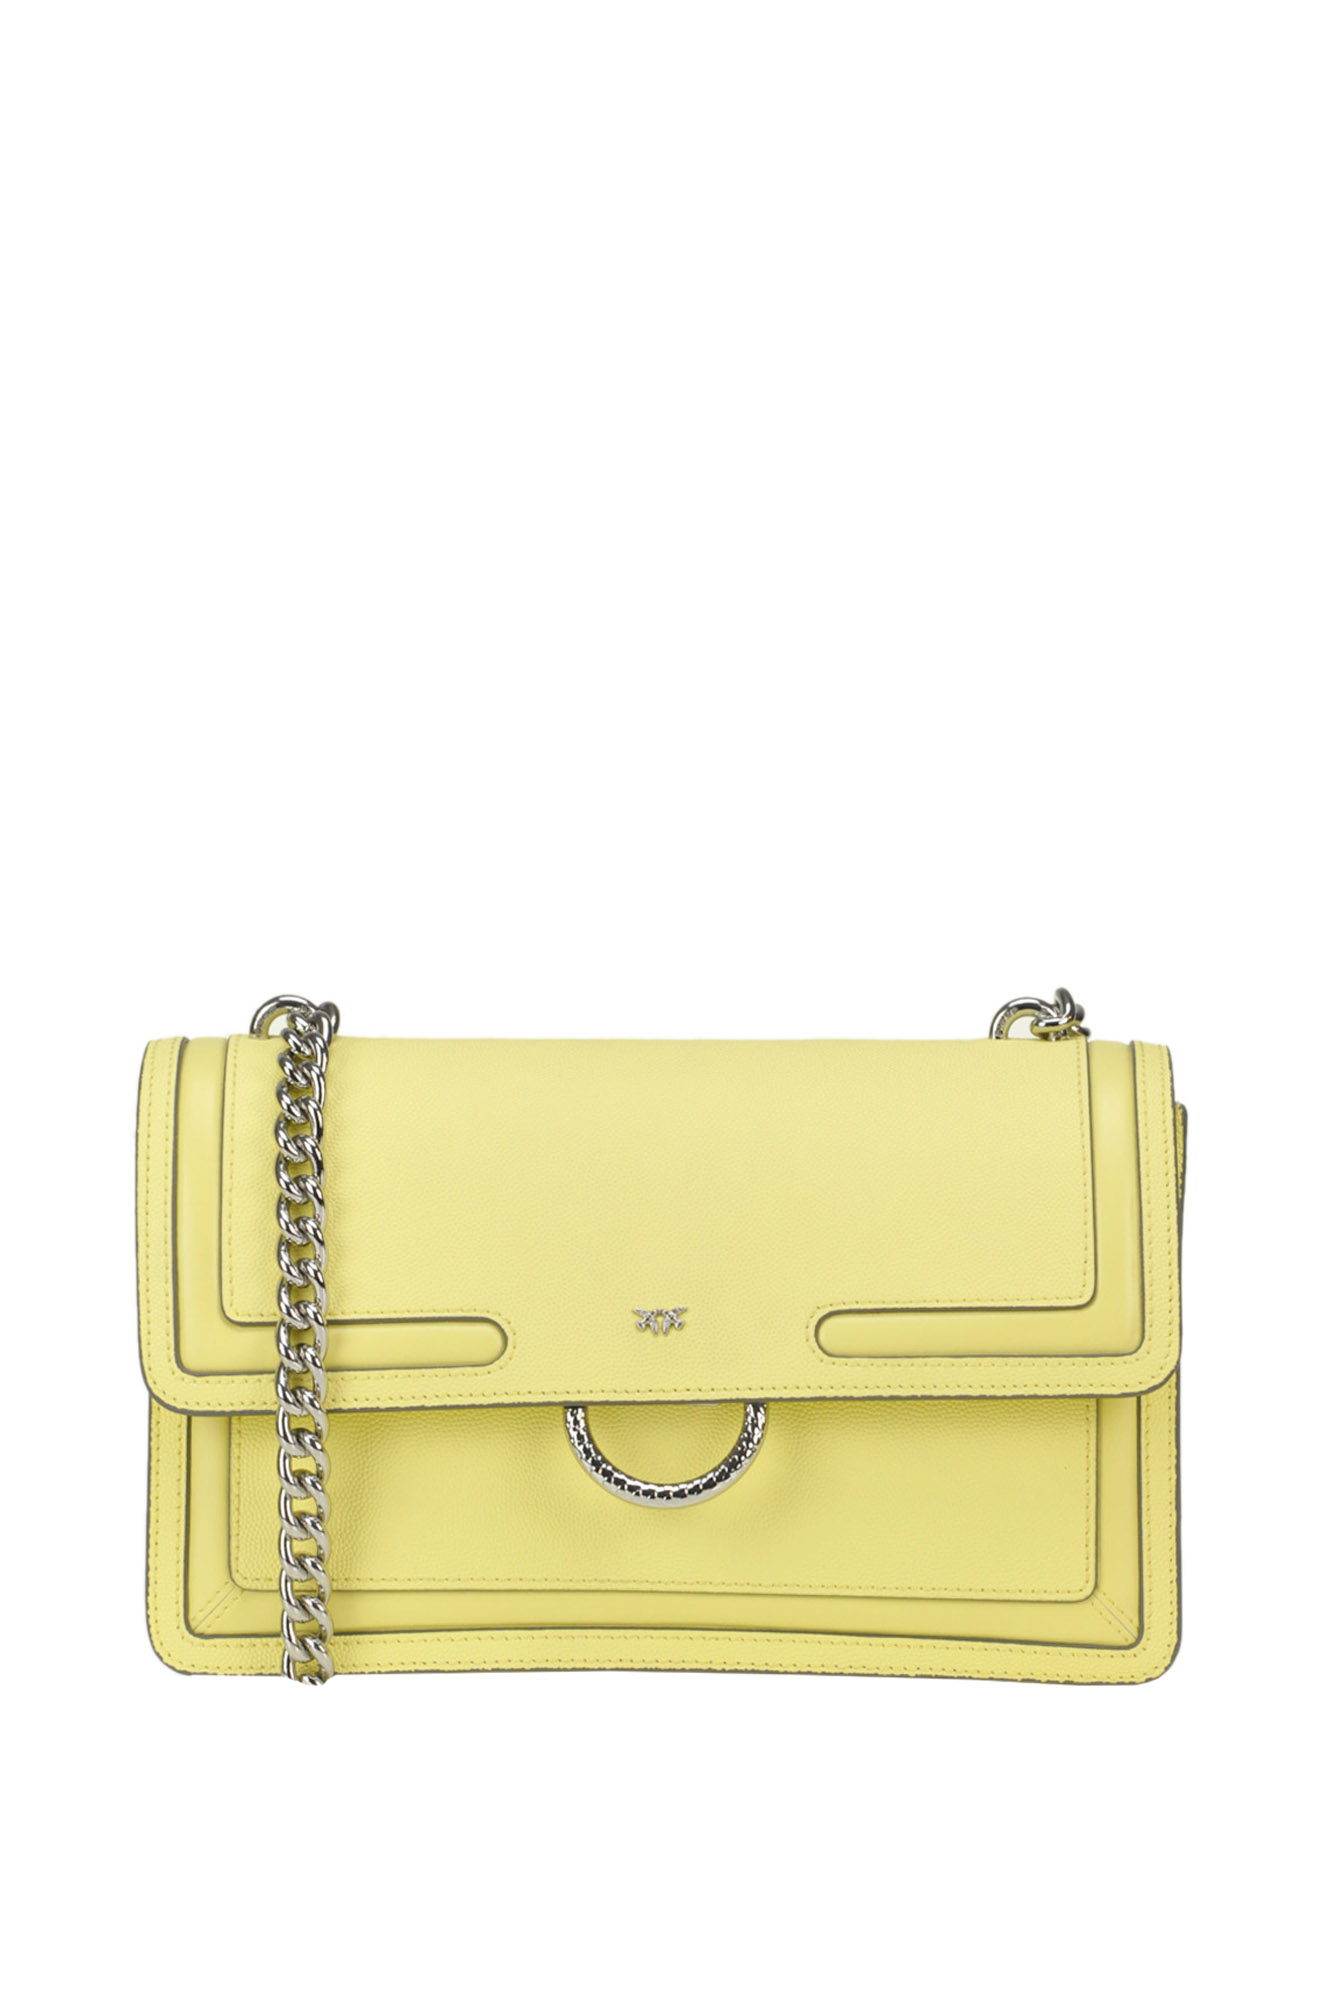 Pinko Love New Mini Bag In Yellow